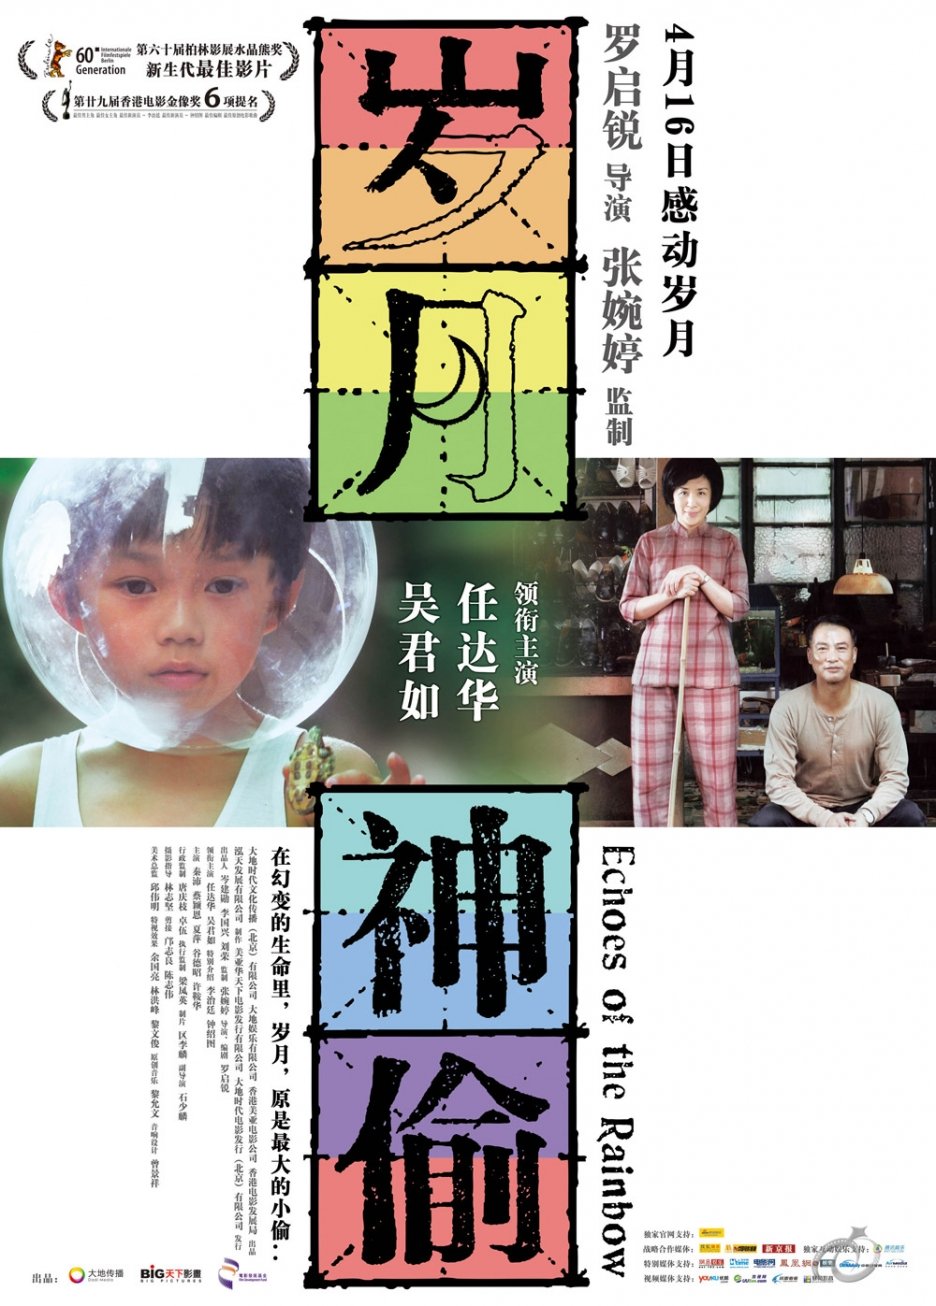 L'affiche originale du film Echoes of the Rainbow en Cantonais